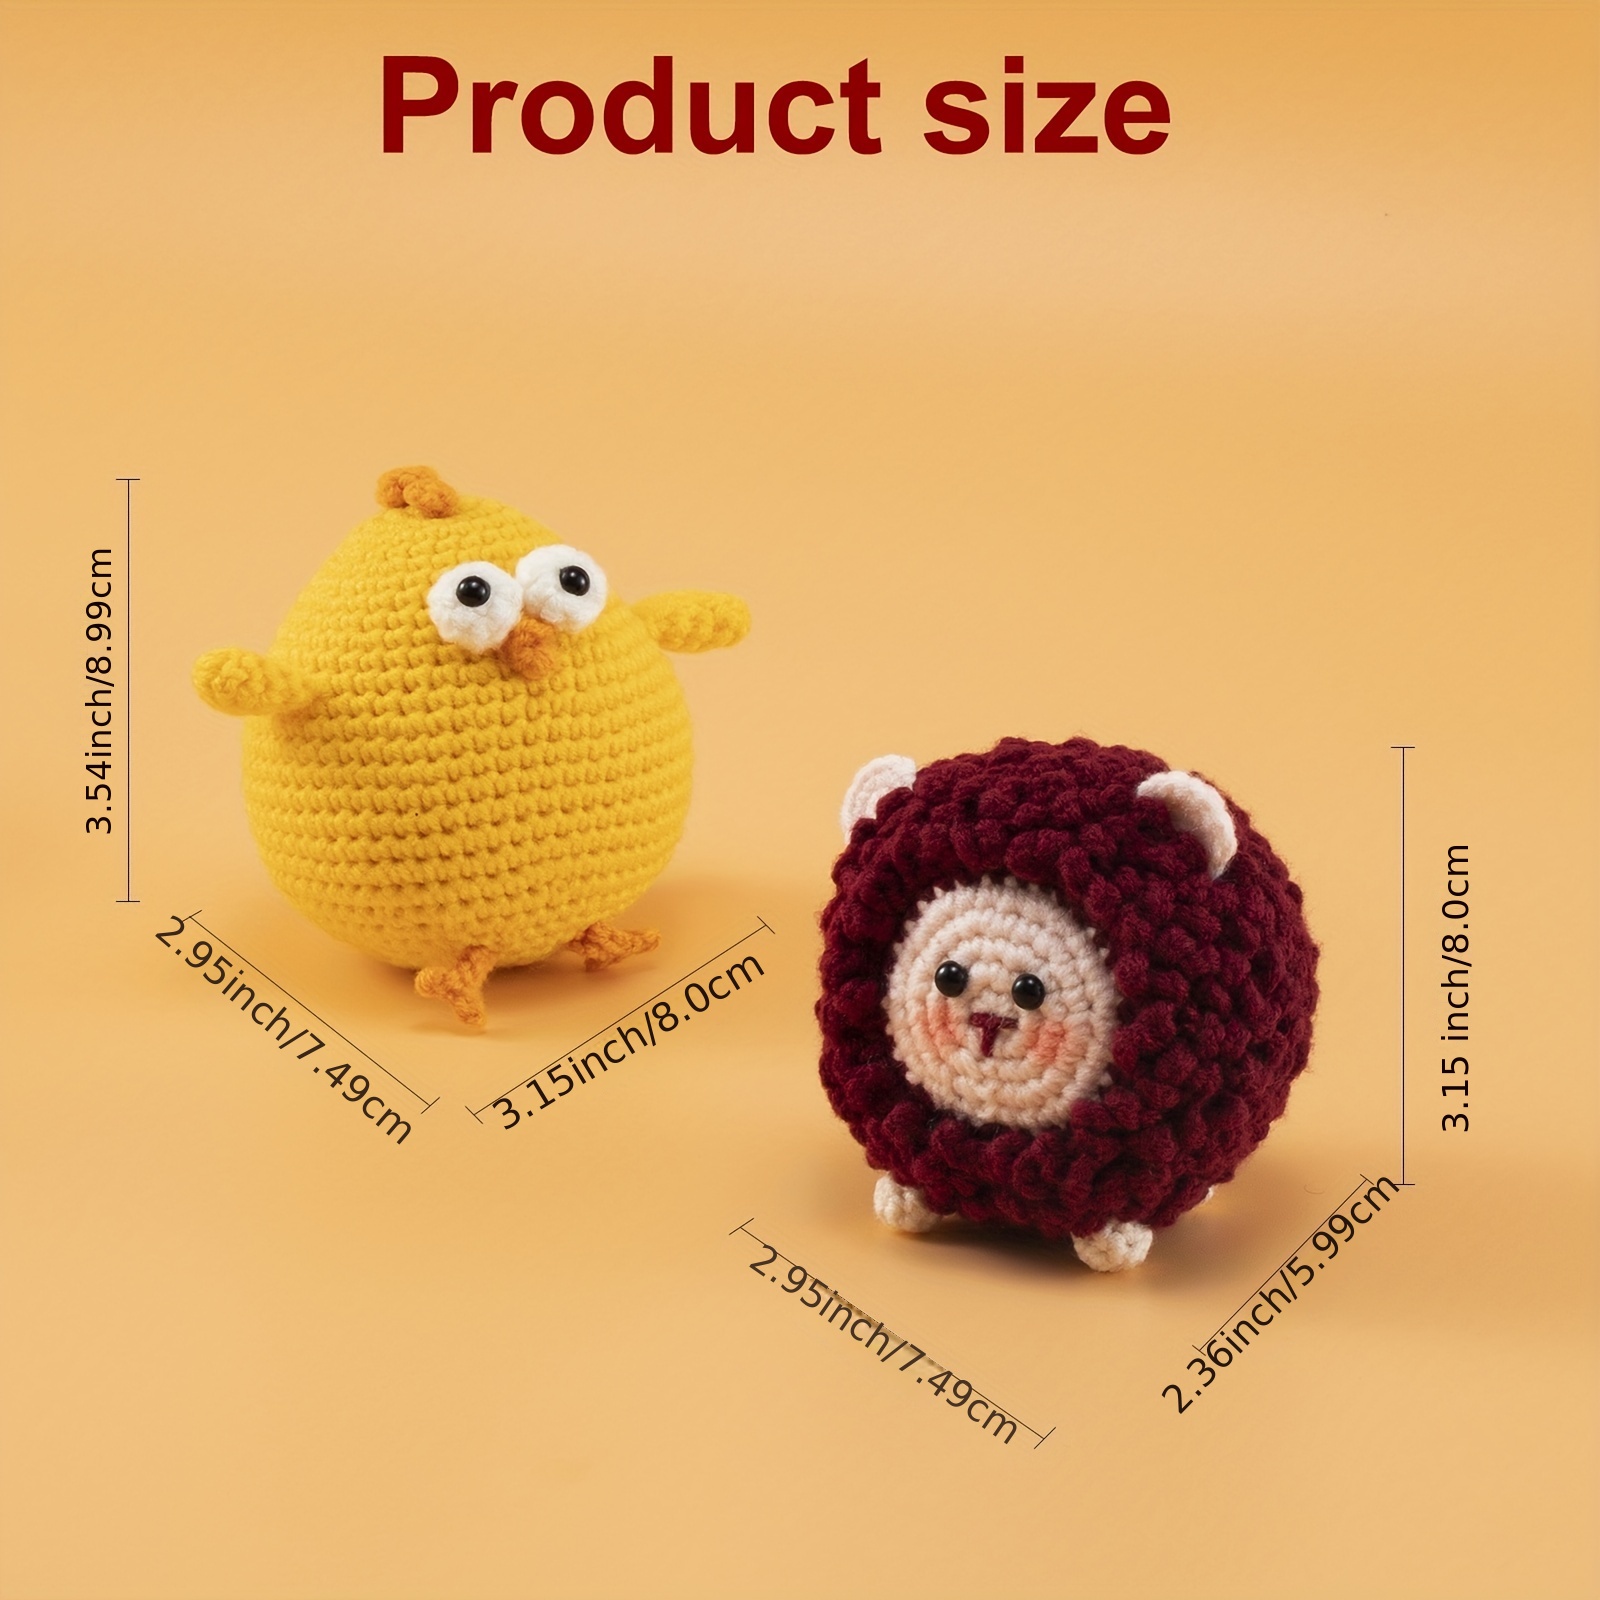  Crochet Kit for Beginners, Crocheting Knitting Kit